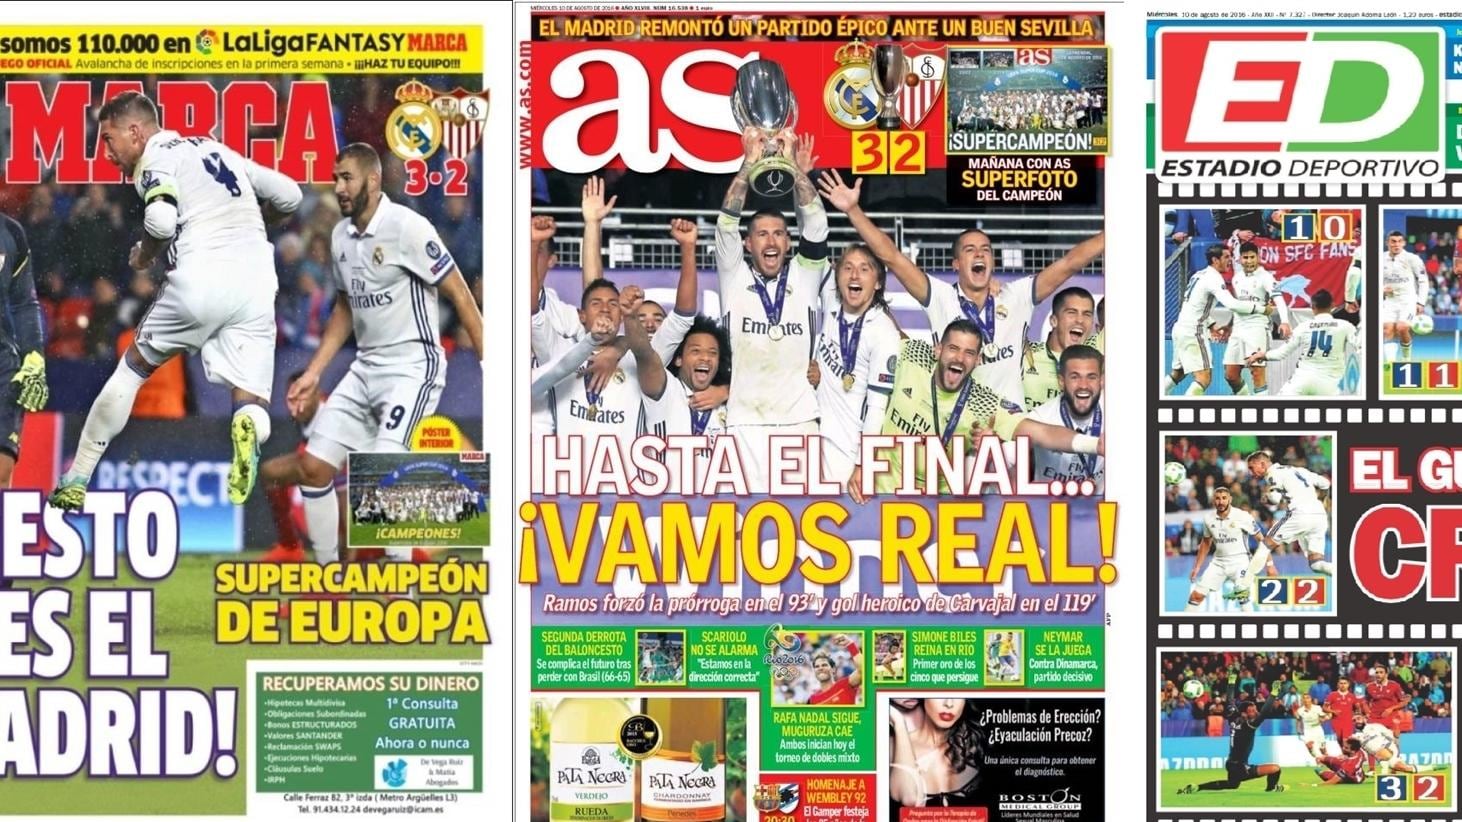 Испанские сми. СМИ футбол. Испанские газеты про испанку. Первое полоса газета as Испания.